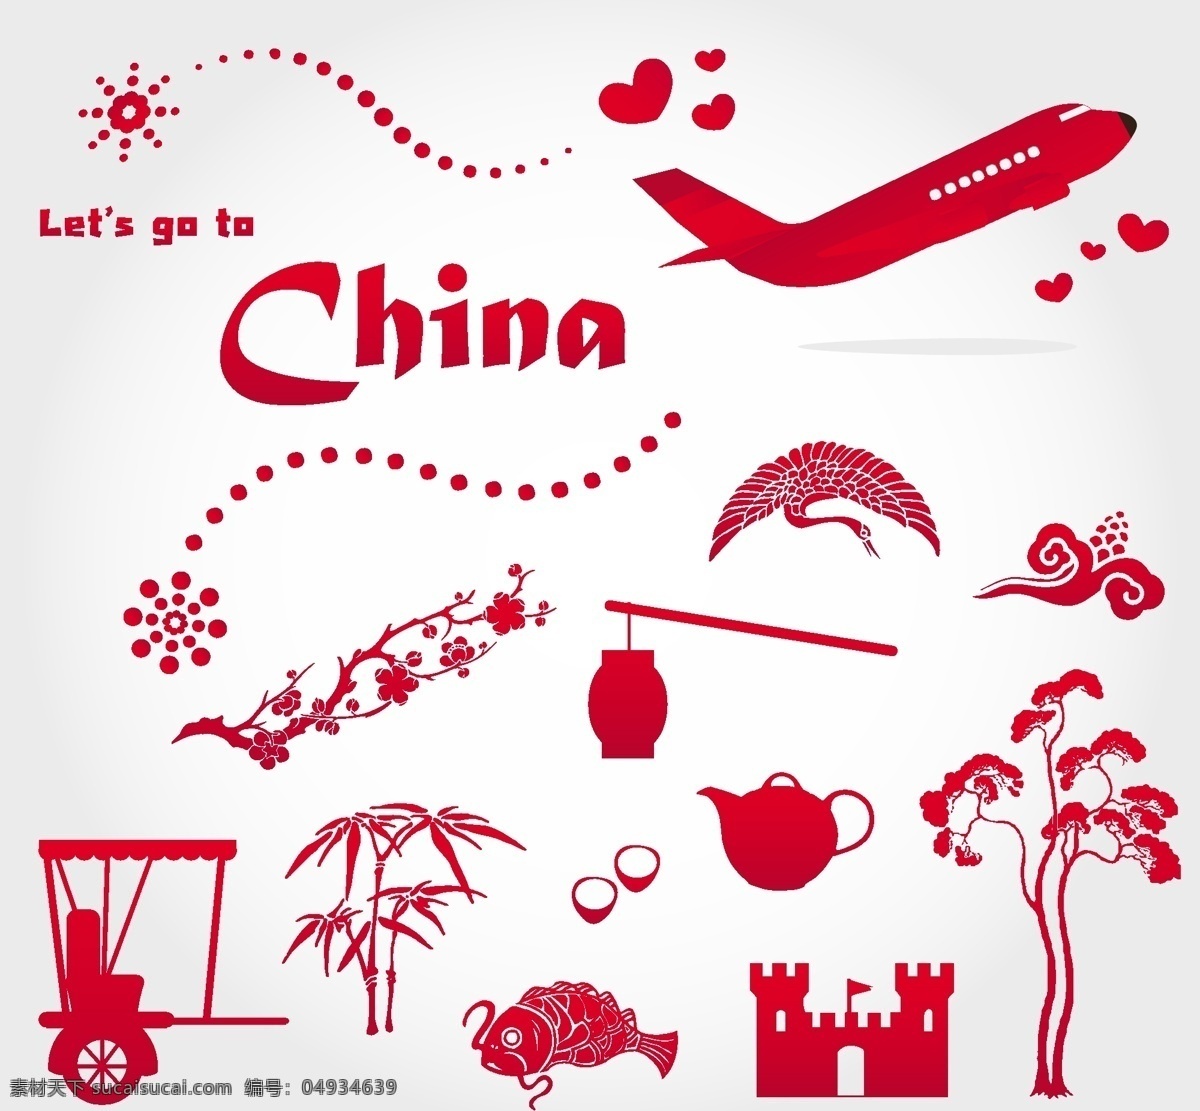 中国元素 中国建筑 飞机 剪纸 手绘 中国风 灯笼 传统文化 文化艺术 矢量